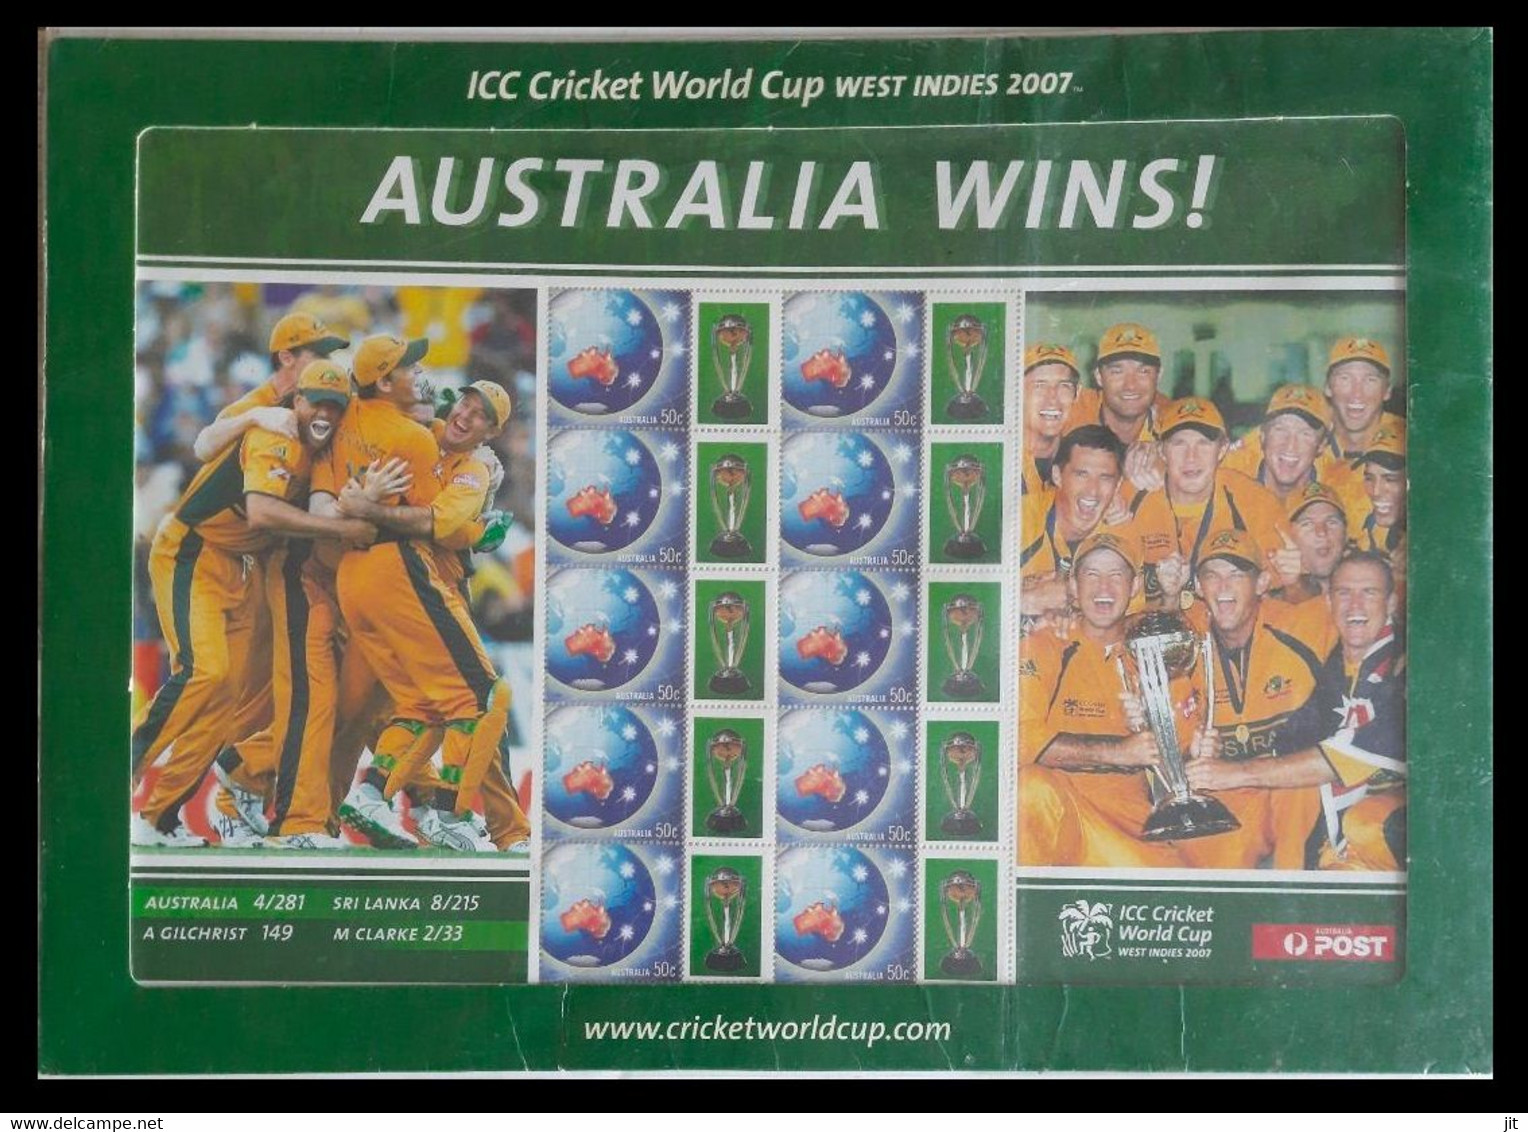 166. AUSTRALIA 2007 STAMP SHEET AUSTRALIA WINS !! ICC CRICKET WORLD CUP .MNH - Ganze Bögen & Platten